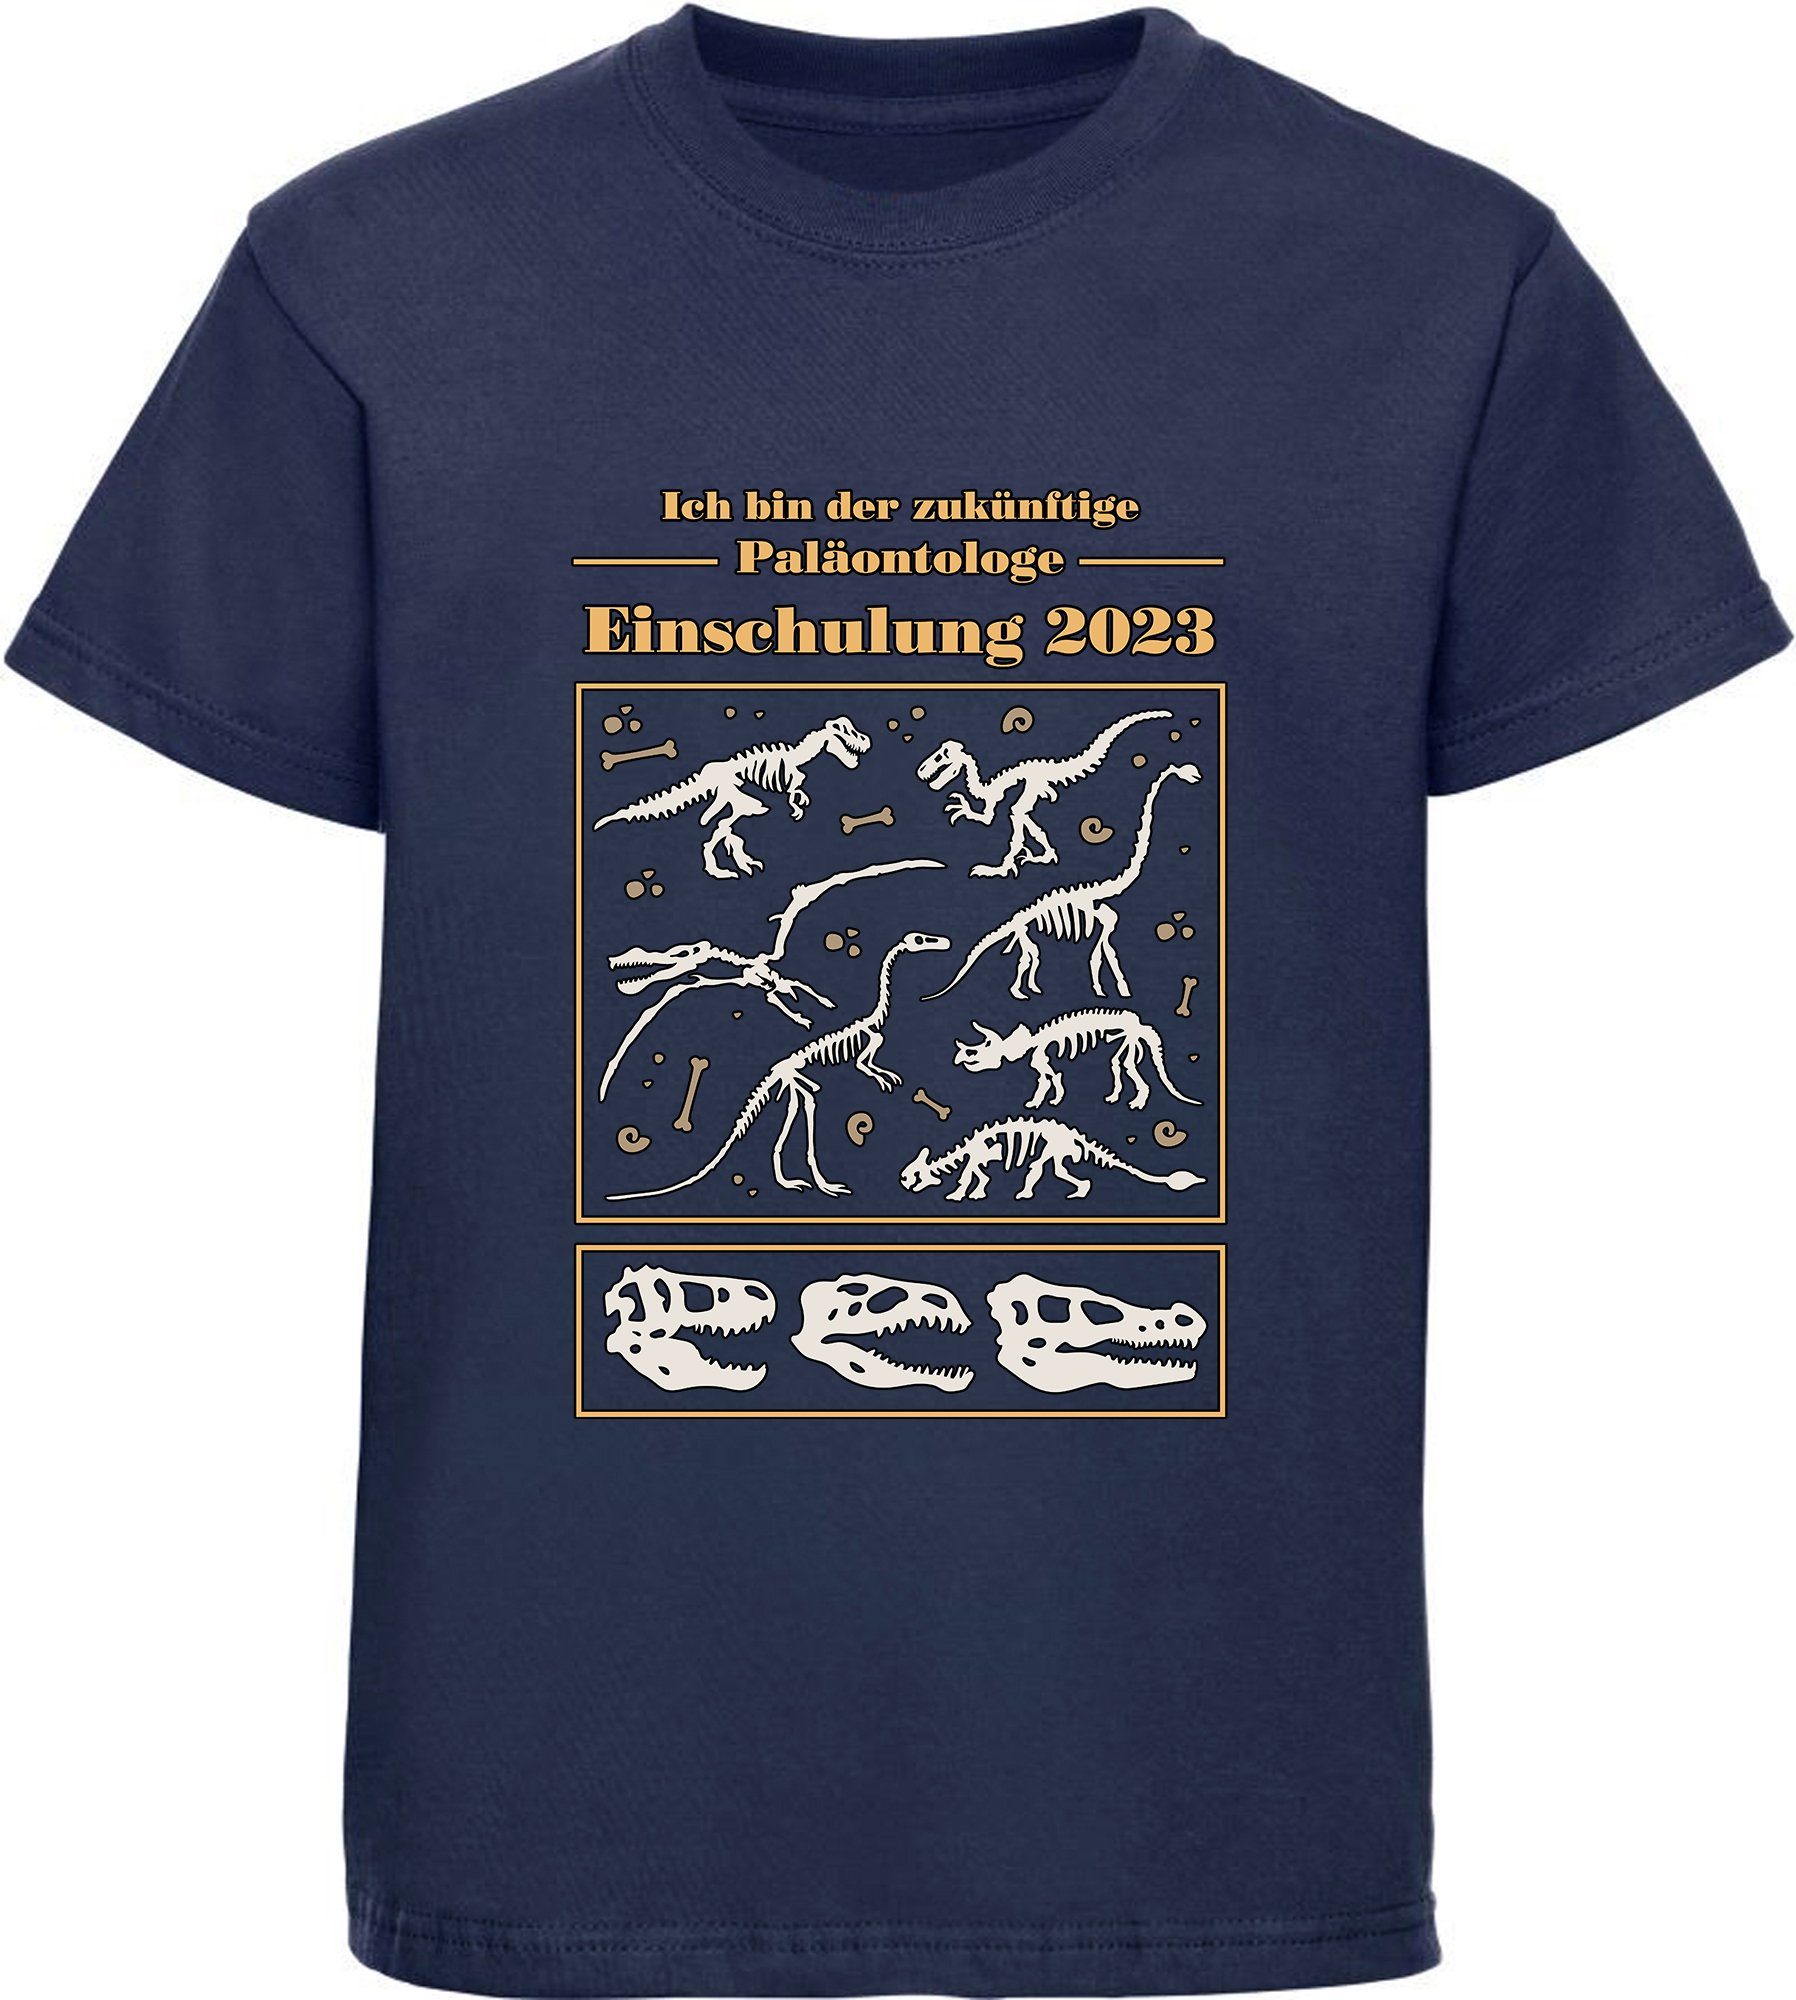 MyDesign24 Print-Shirt bedrucktes Kinder T-Shirt i36 Baumwollshirt Skeletten zukünftige schwarz, Einschulung navy Paläontologe mit 2023, blau, Dino rot, weiß, blau